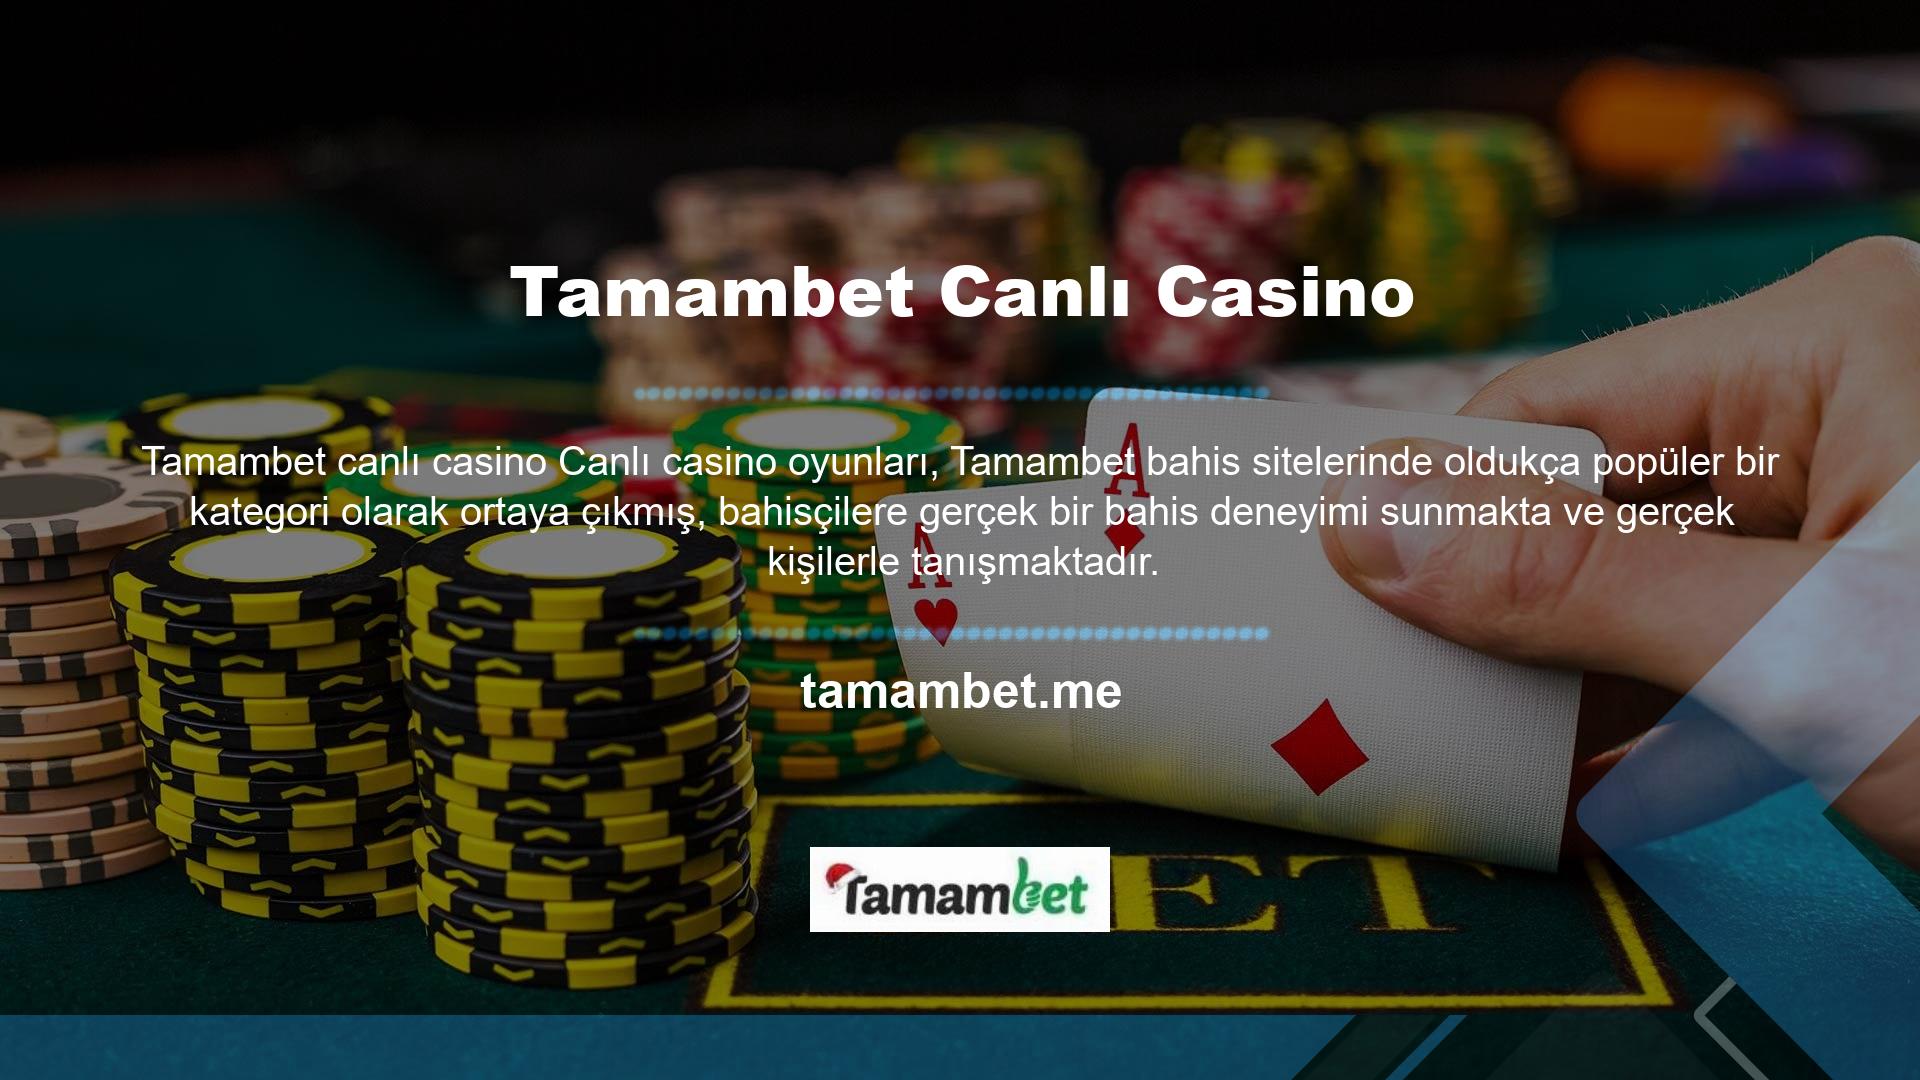 Sitenin Tamambet Canlı Casino bölümü kullanıcılarına hızlı ve kaliteli hizmet sunmaktadır